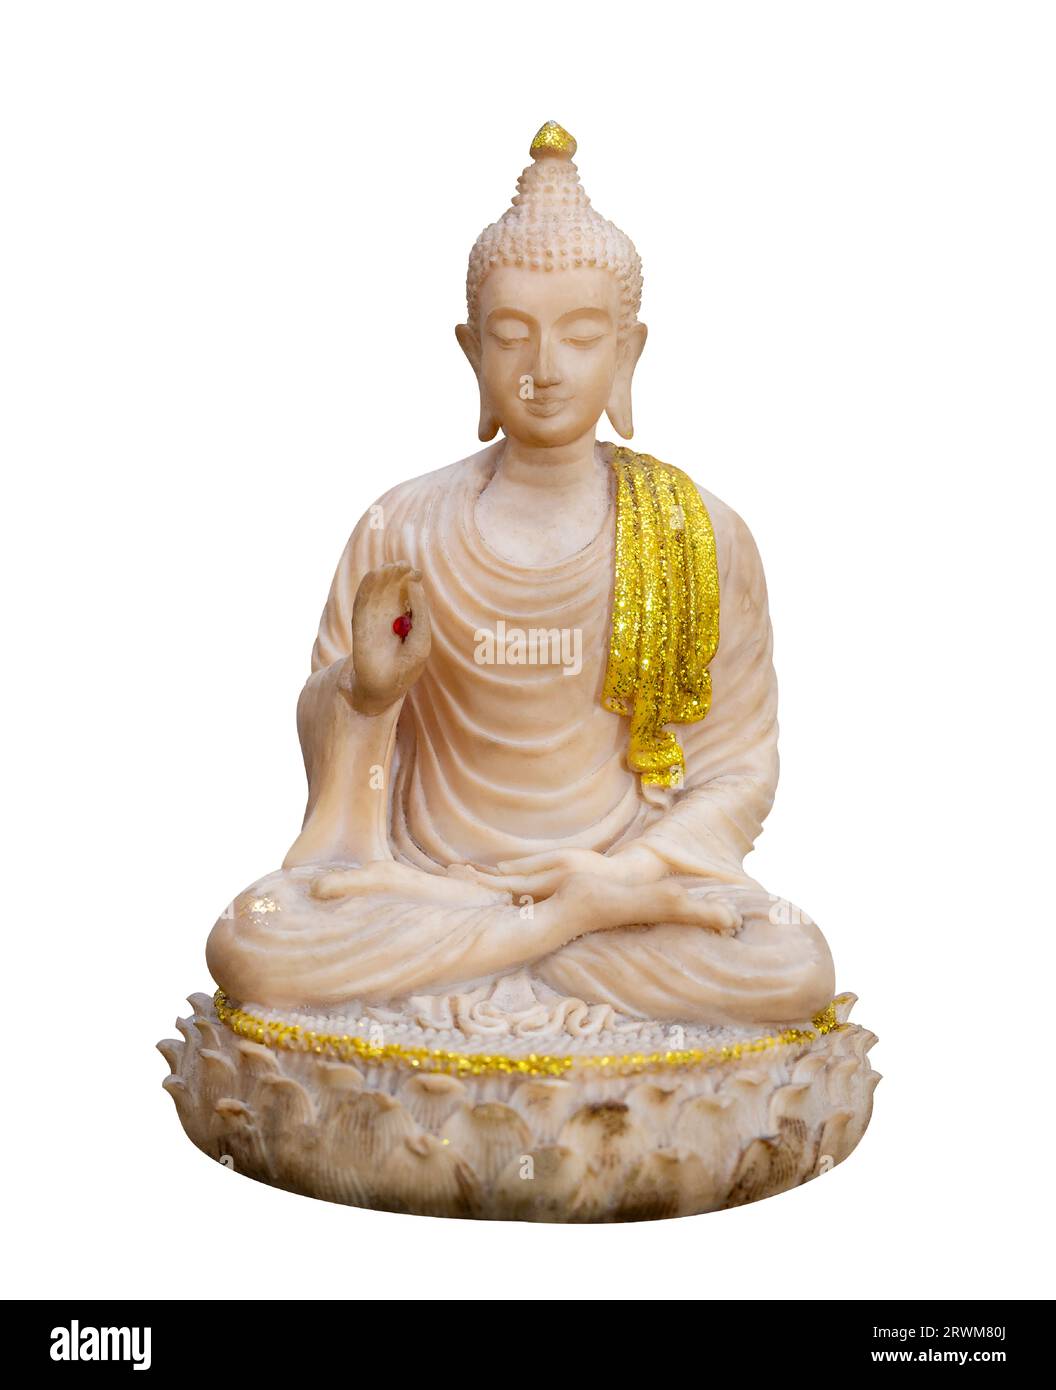 Image de Bouddha sur fond blanc isoler Banque D'Images